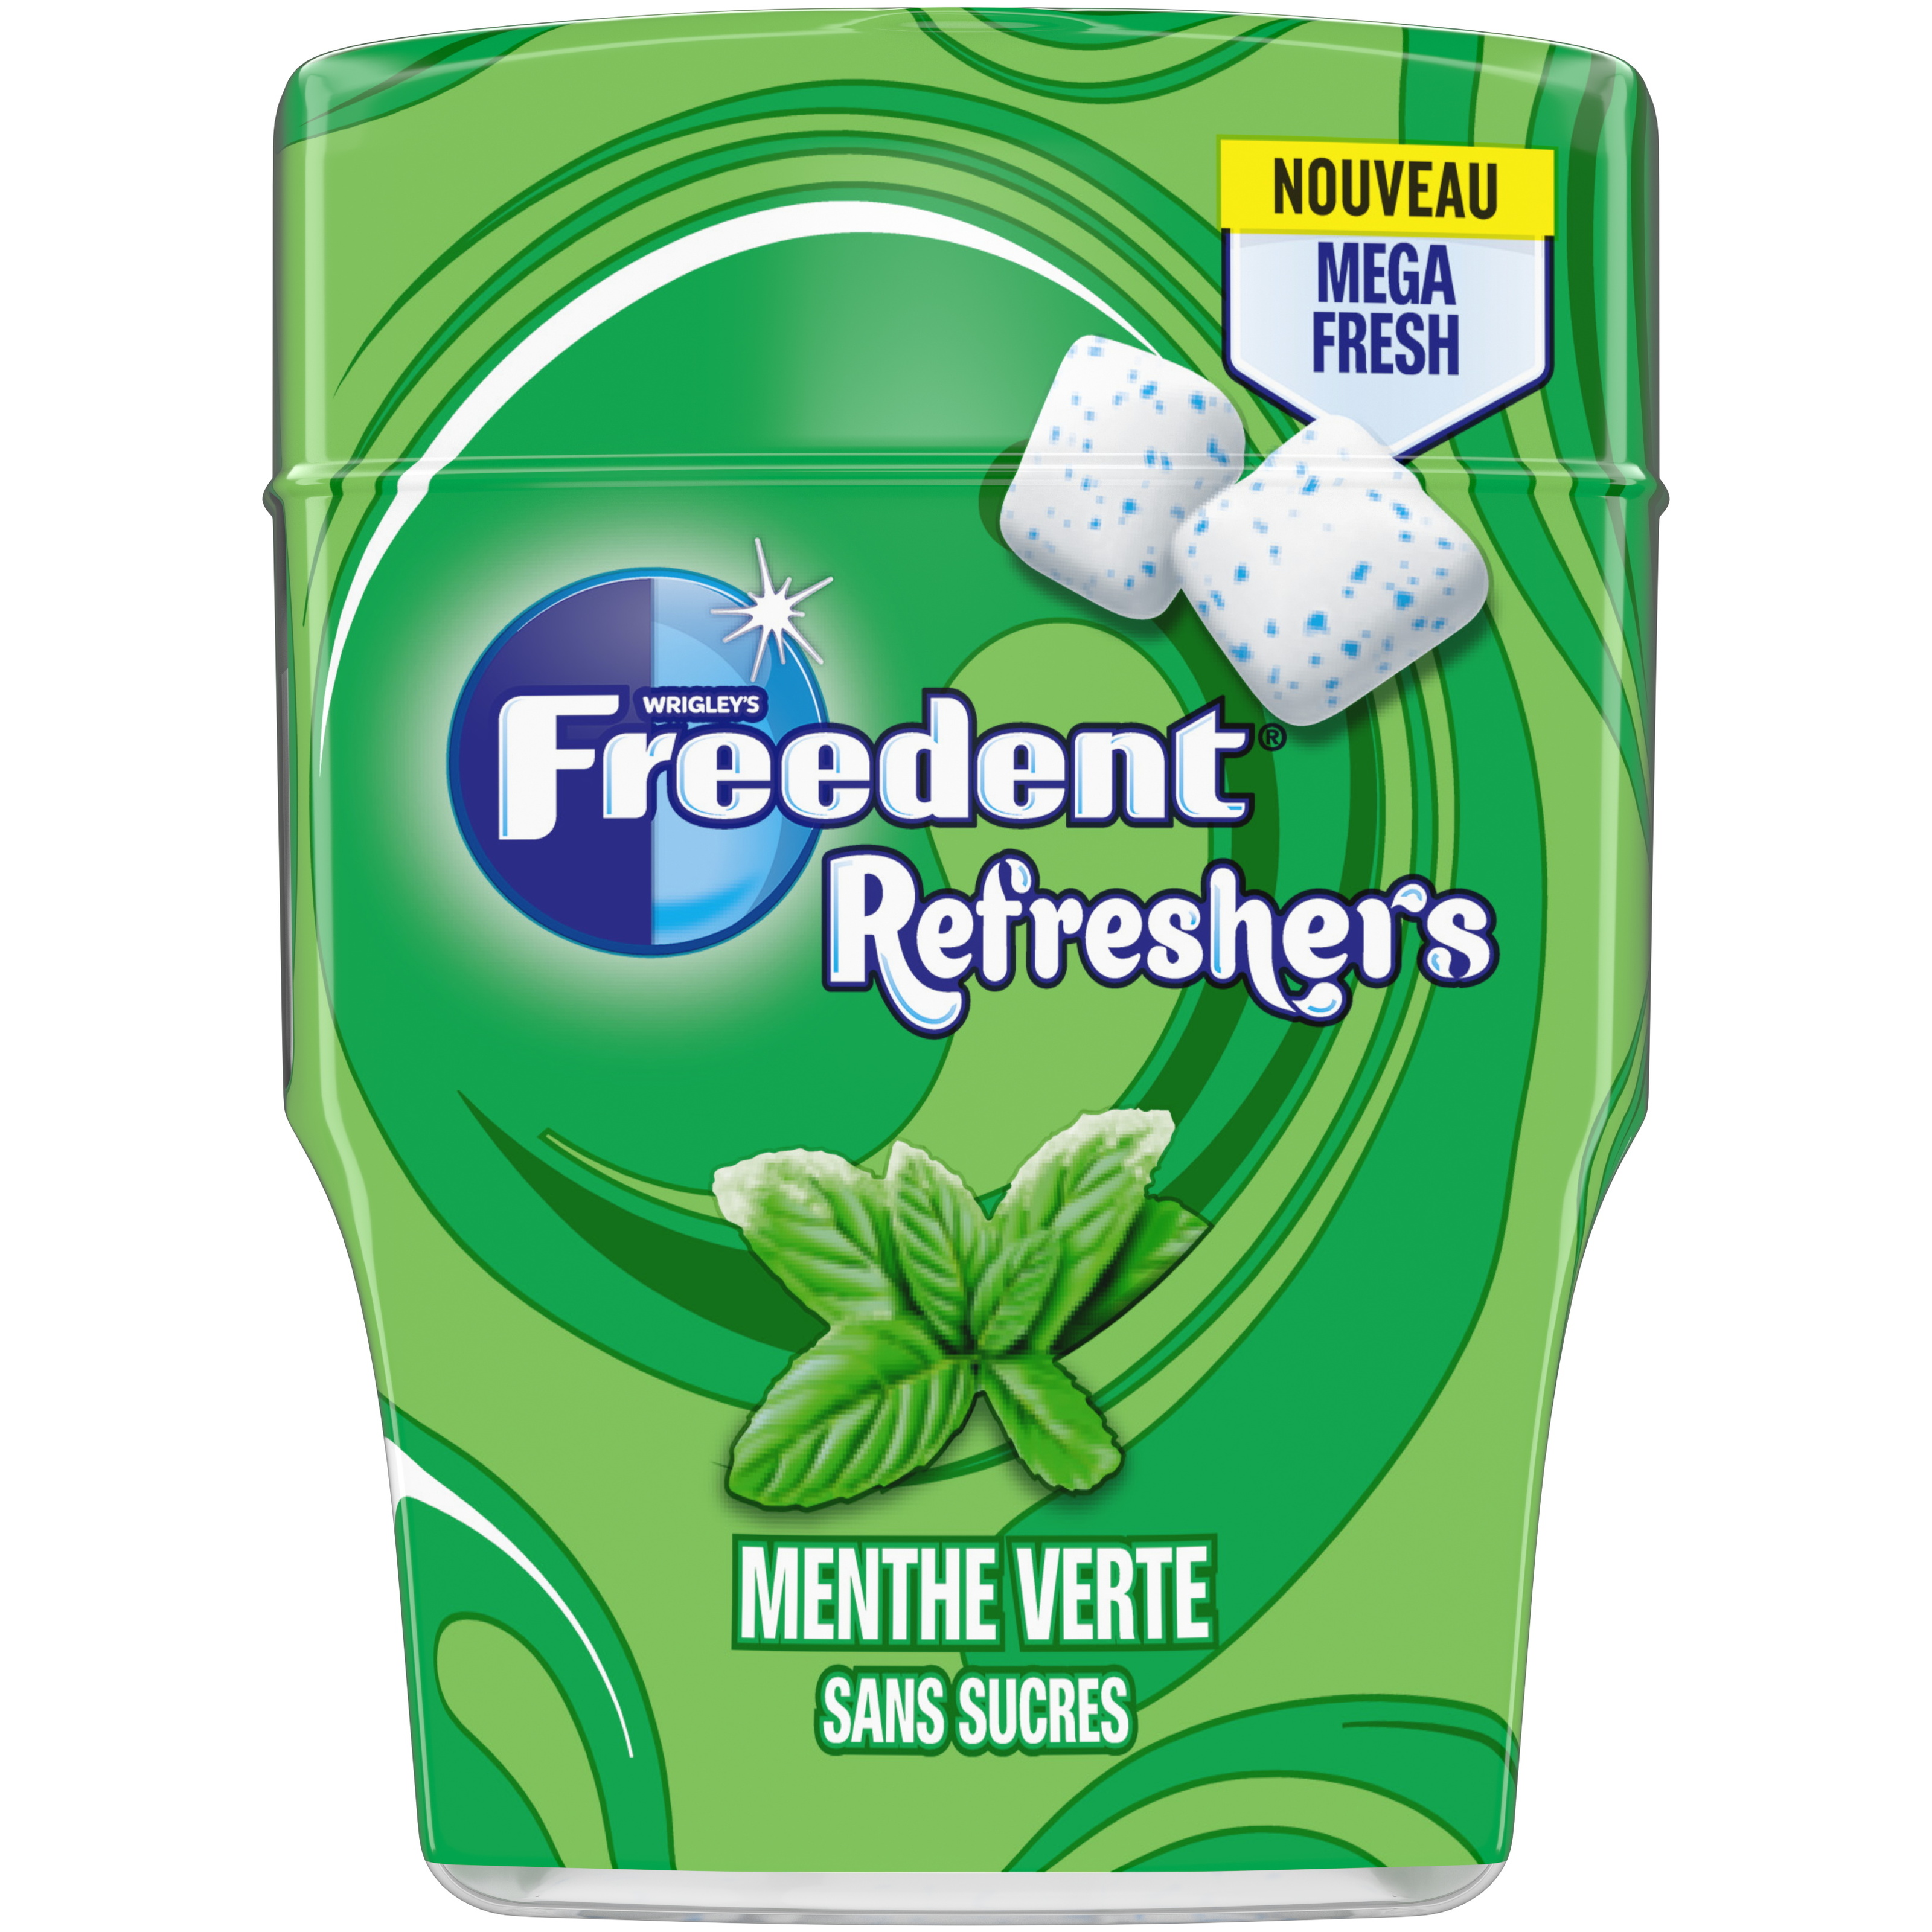 Chewing-gum à la menthe verte sans sucres 2Fresh HOLLYWOOD